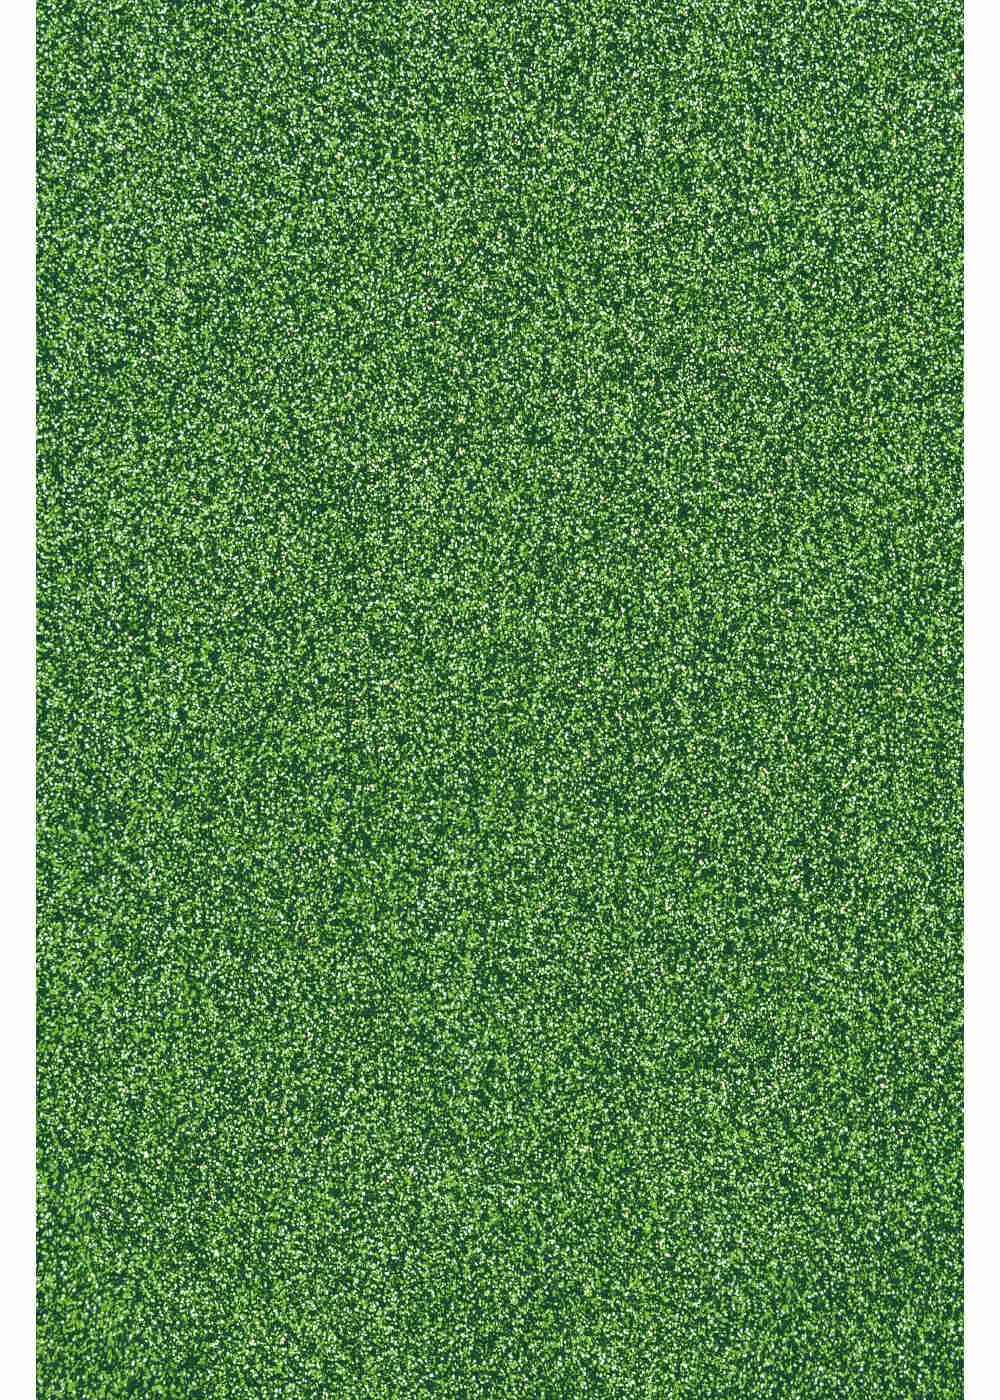 Hilltop Transparentpapier Glitzer Transferfolie/Textilfolie zum Plottern Light perfekt Aufbügeln, zum Green